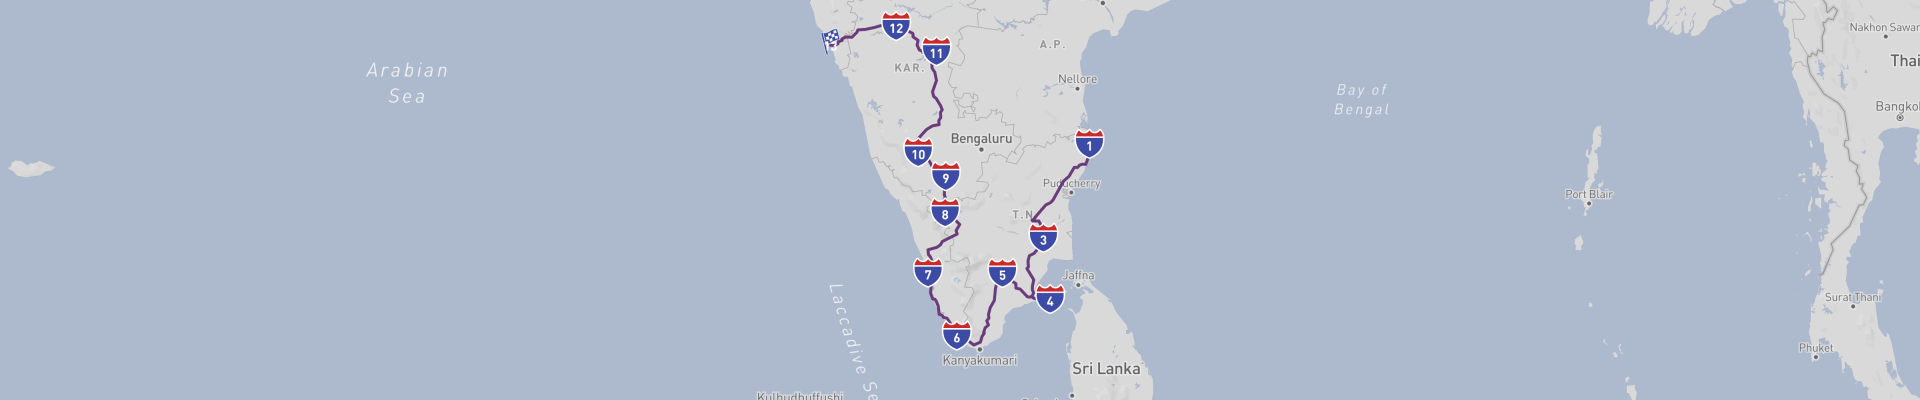 Гранд-тур по Южной Индии